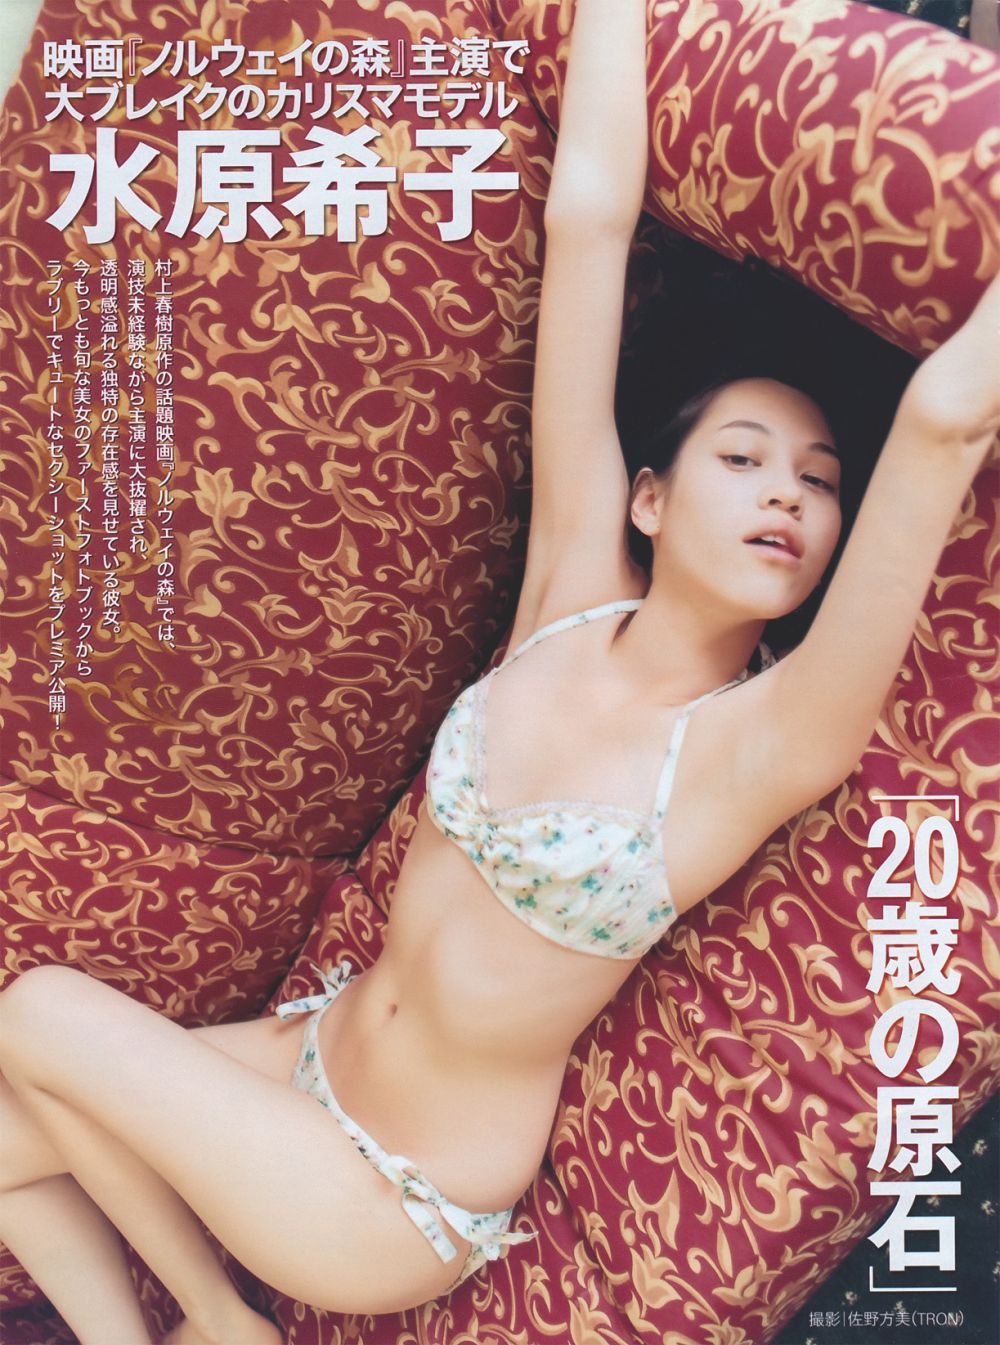 Kiko Mizuhara Sexy and Hottest Photos , Latest Pics